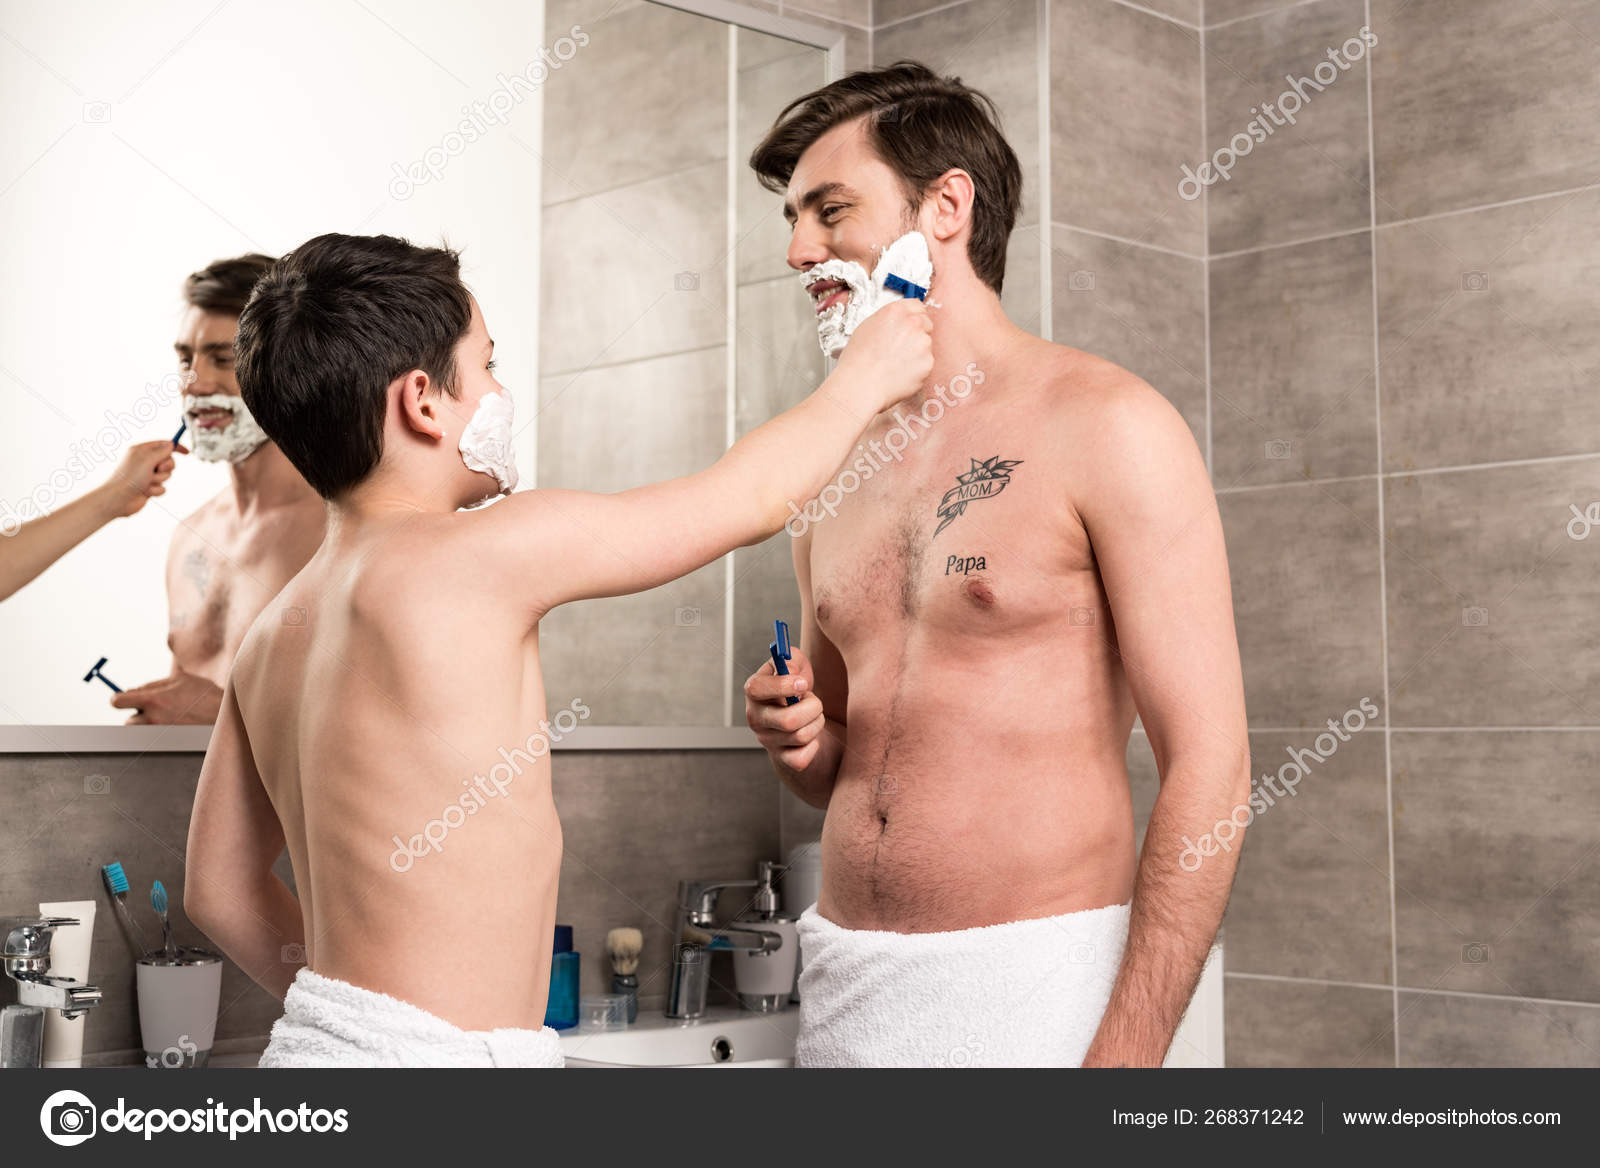 Бреет яйца мужу. Бритье подростка. Выбритый парень бреется. Парень подросток бреется. Процесс бритья.